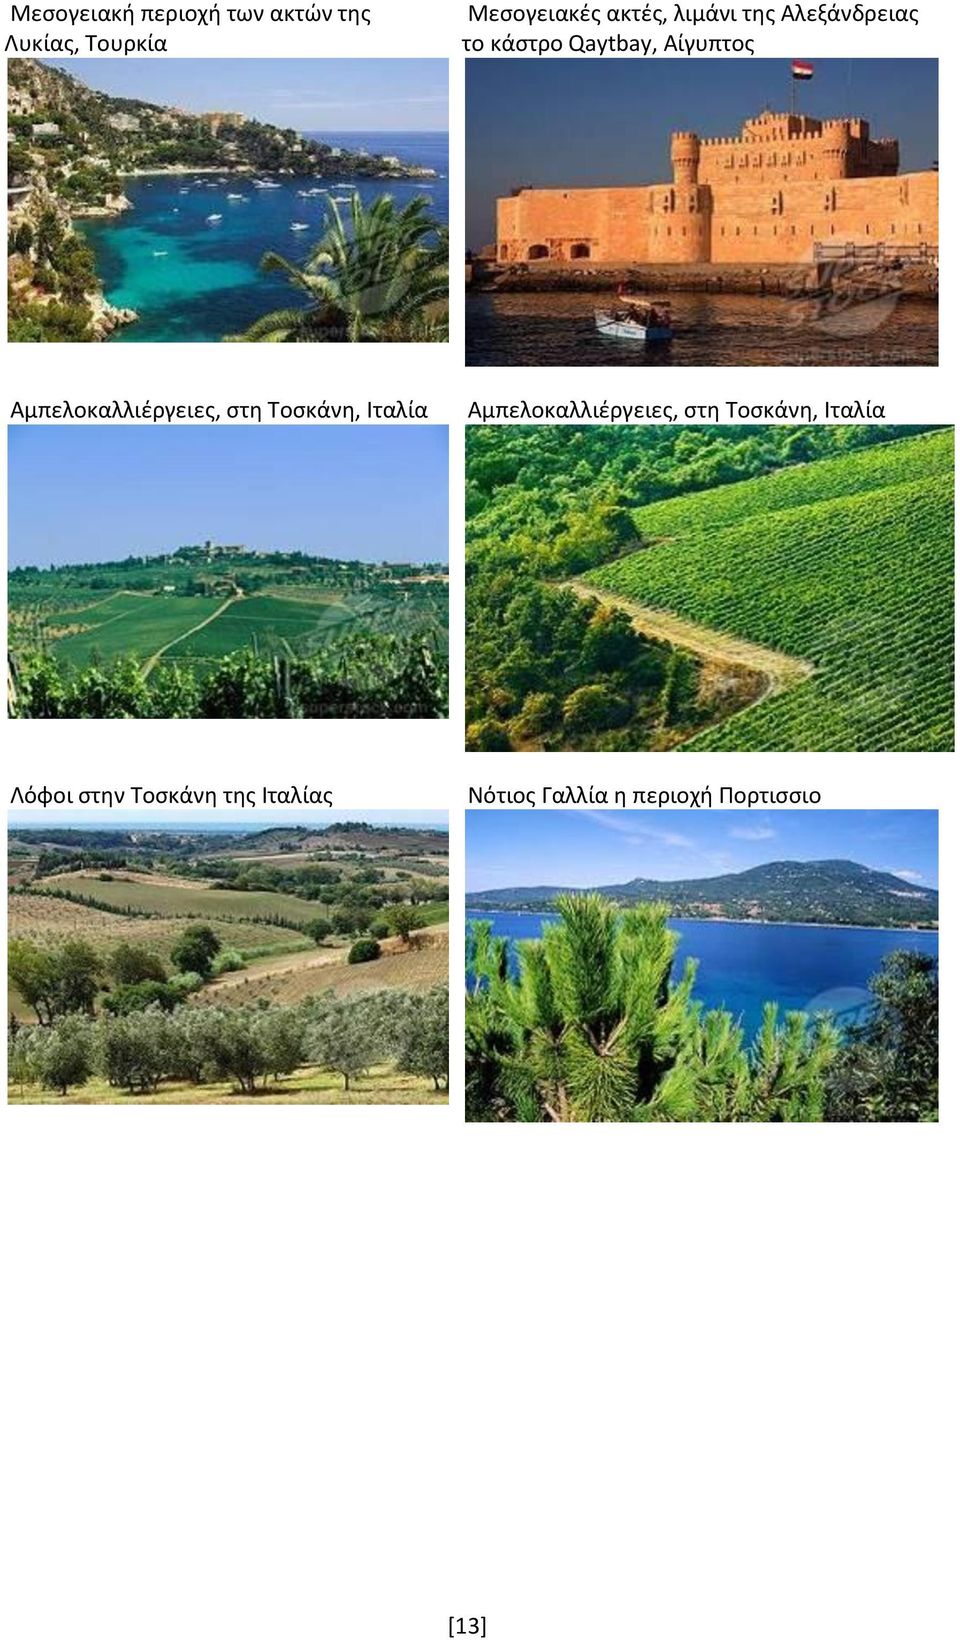 Αμπελοκαλλιέργειες, στη Τοσκάνη, Ιταλία Αμπελοκαλλιέργειες, στη